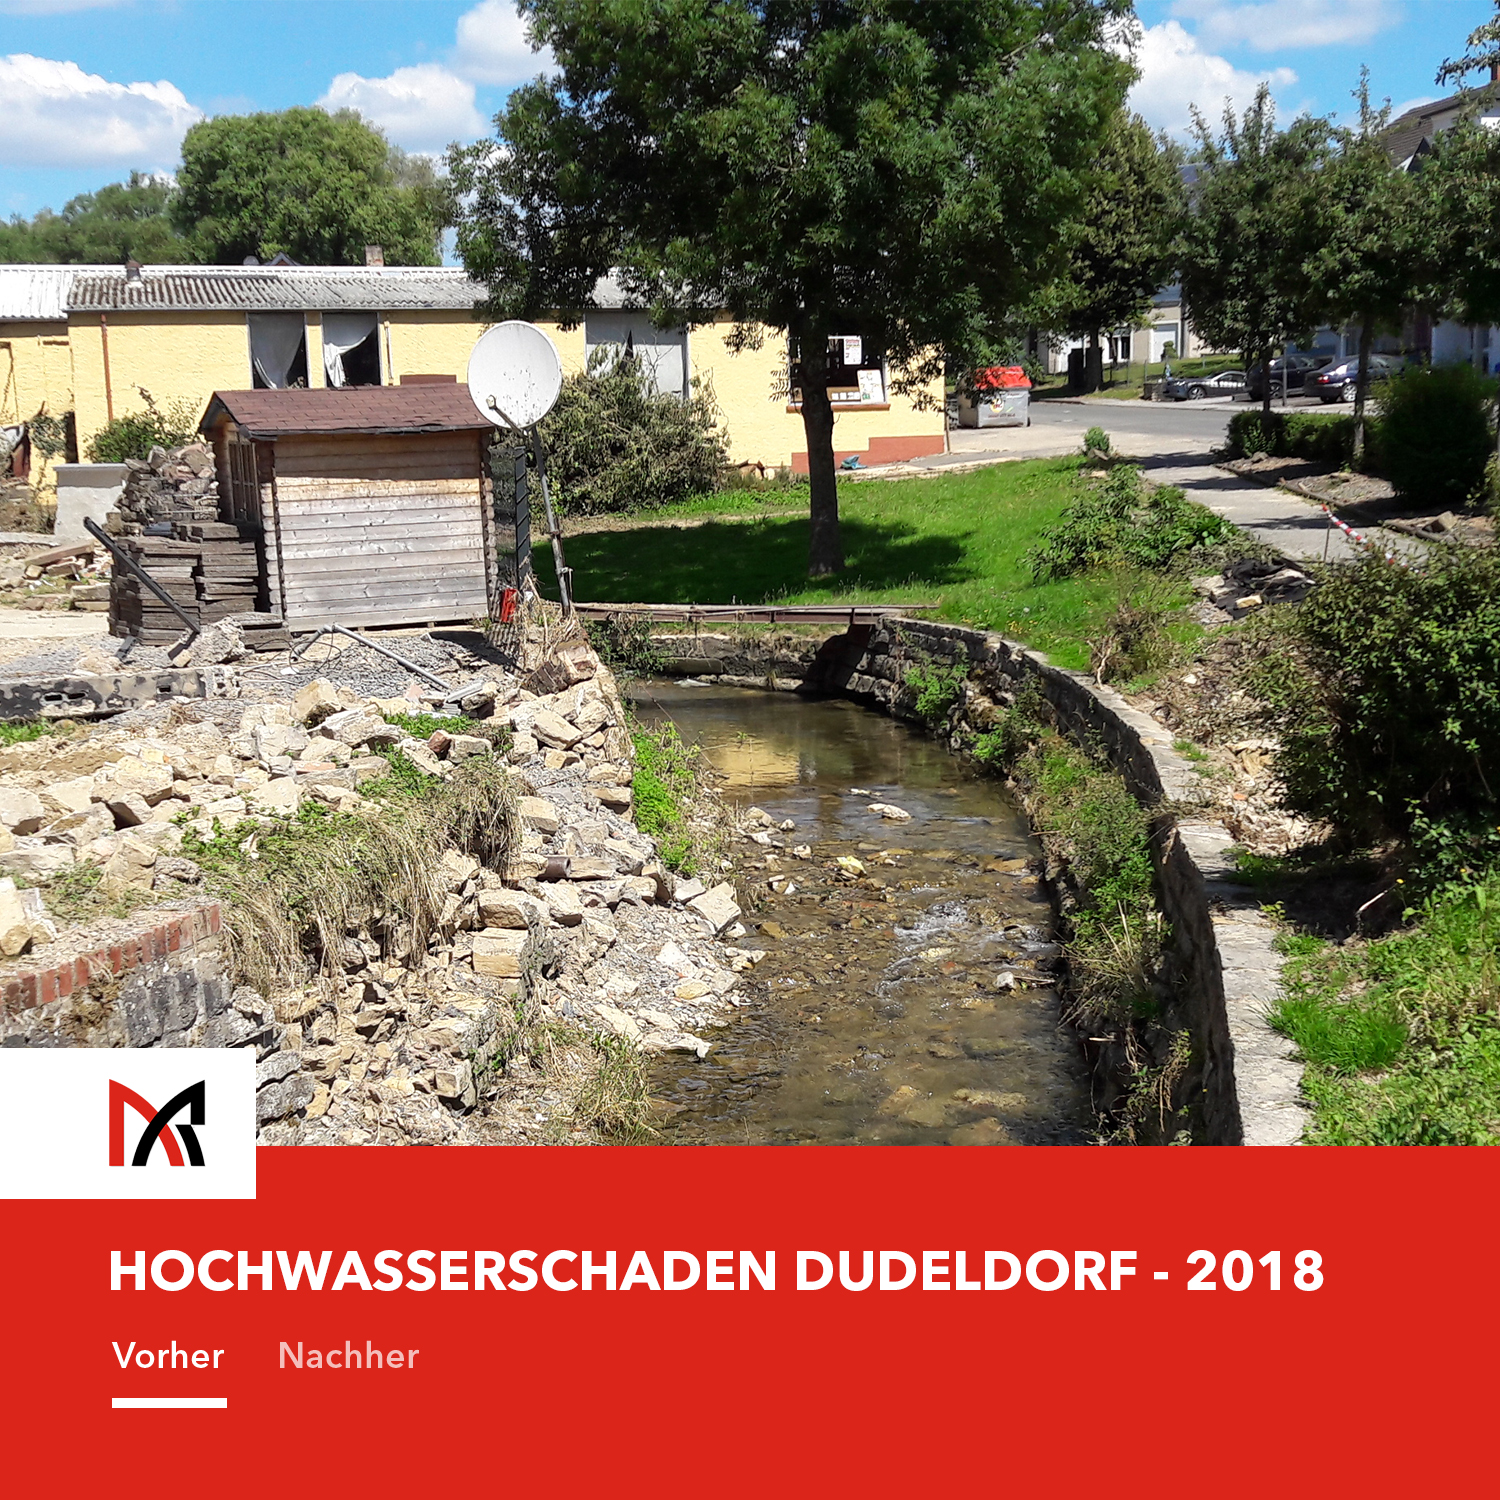 Hochwasserschutz Dudeldorf- Ingenieurbüro Reihsner in Wittlich